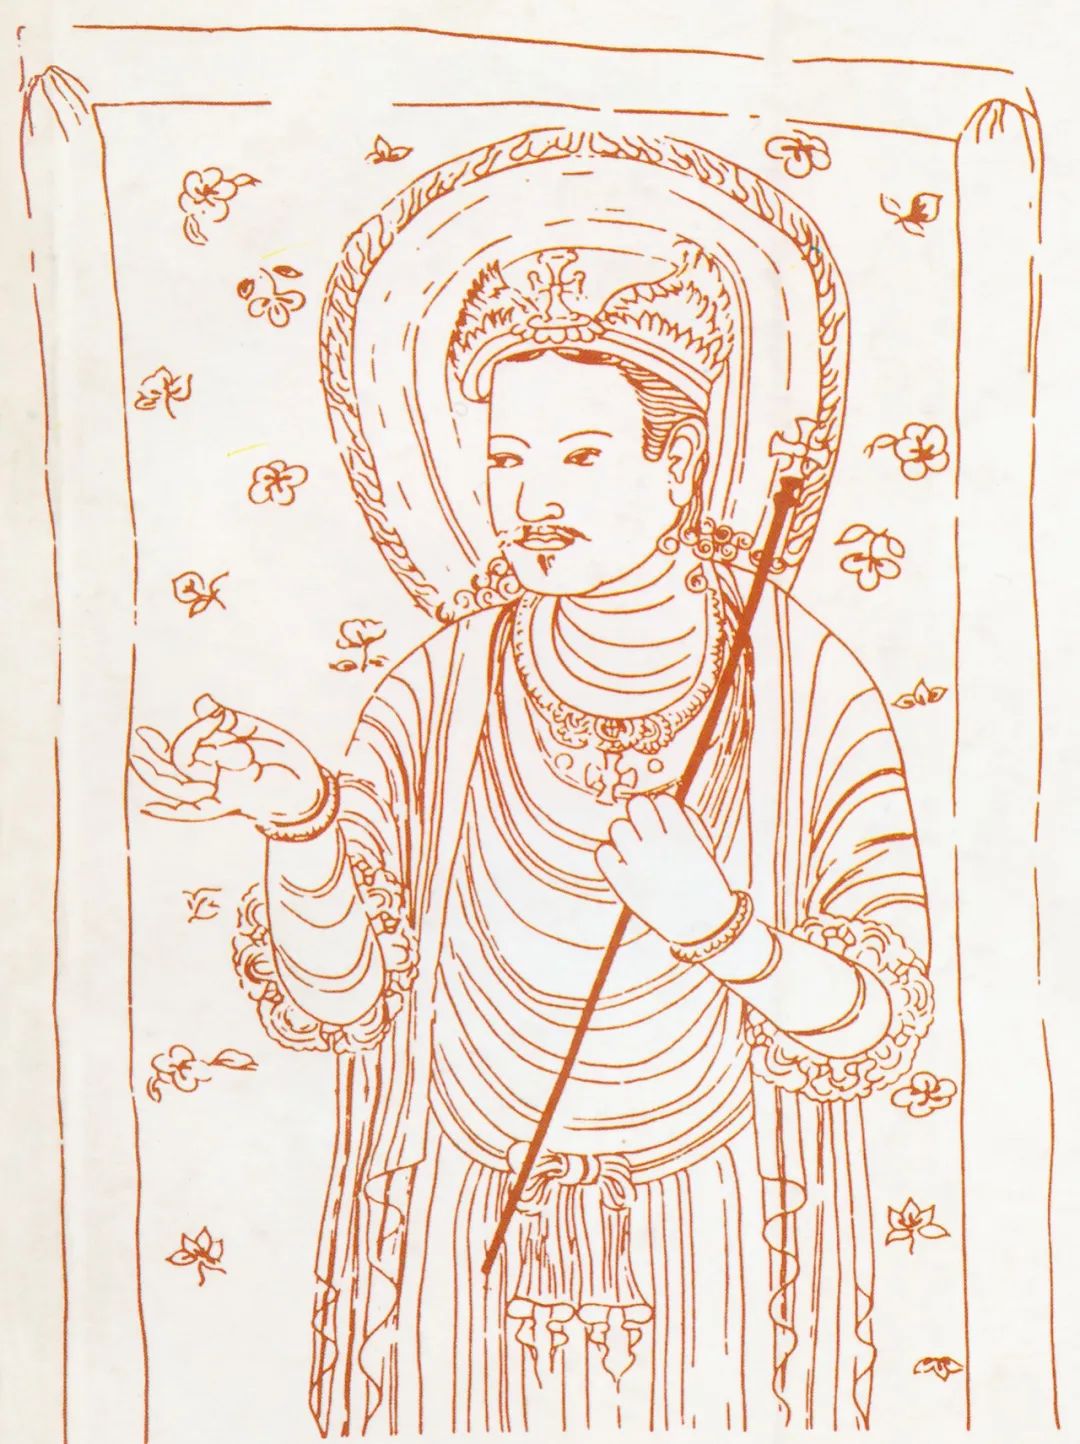 Reconstrucción de un icono de Jesús chino nestoriano, con cruz nestoriana en loto y signo de la paz, hacia el año 900